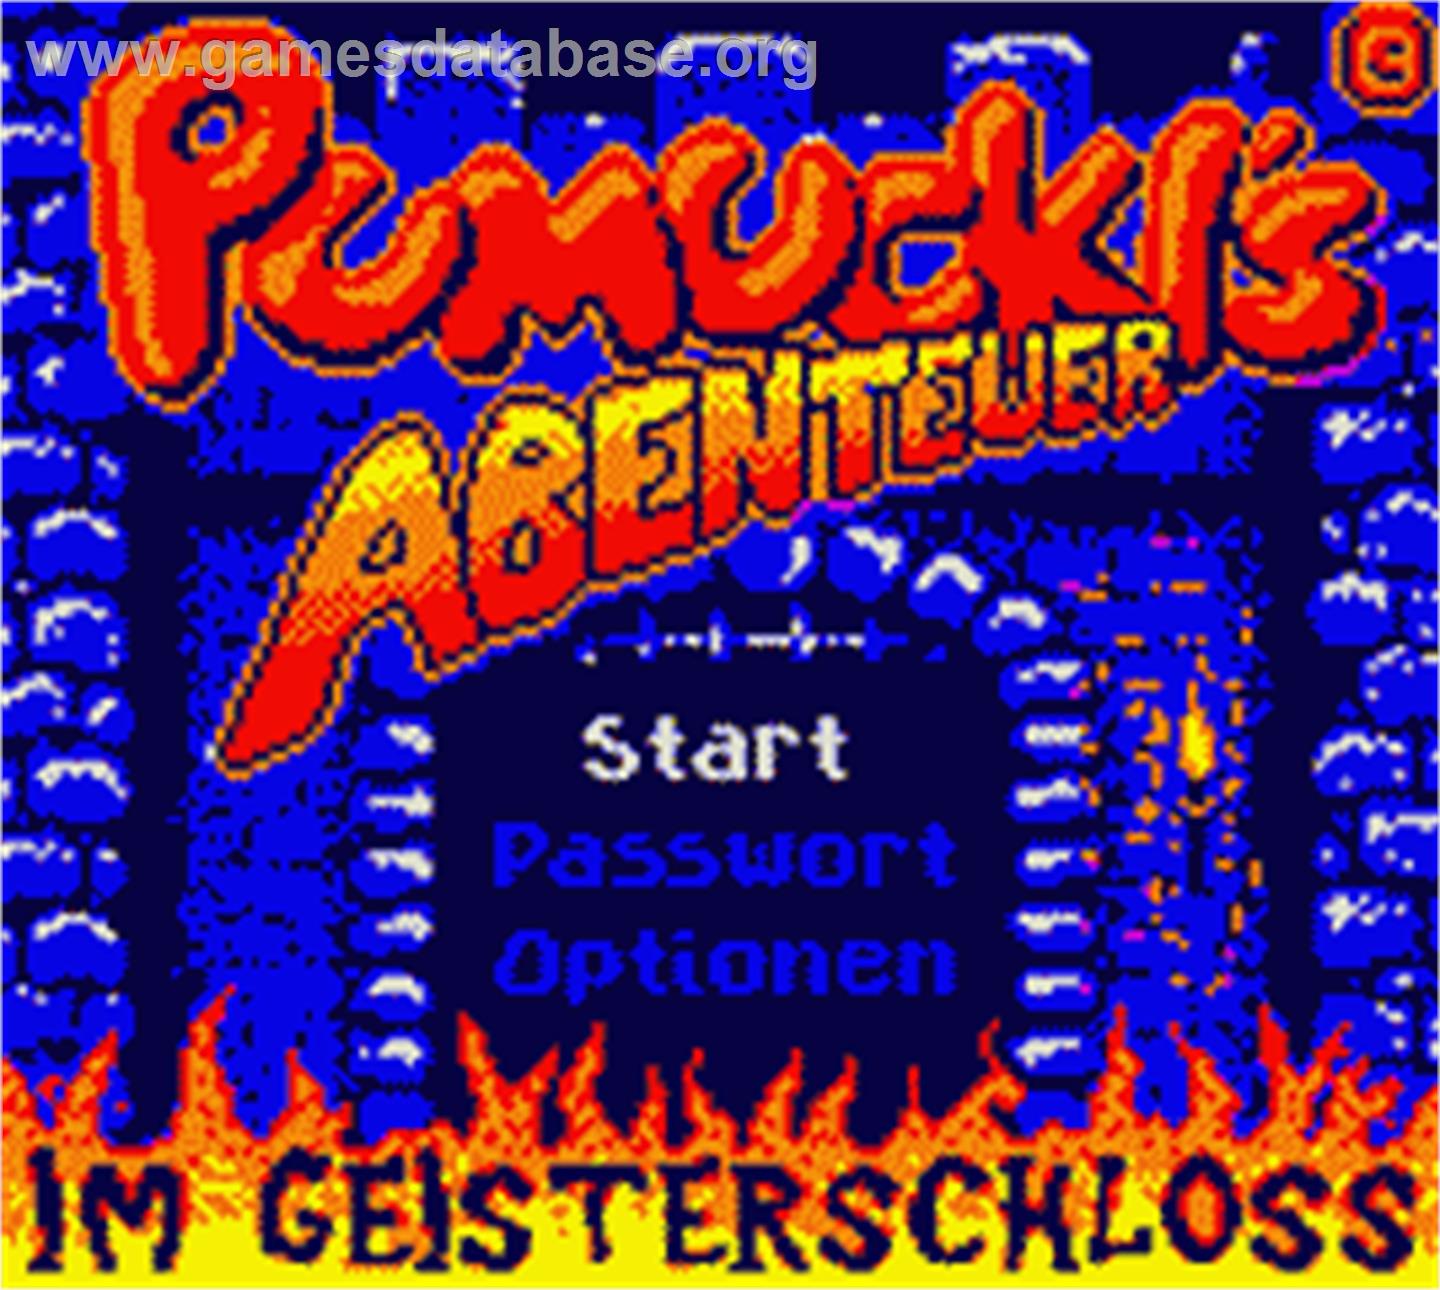 Pumuckls Abenteuer im Geisterschloss - Nintendo Game Boy Color - Artwork - Title Screen